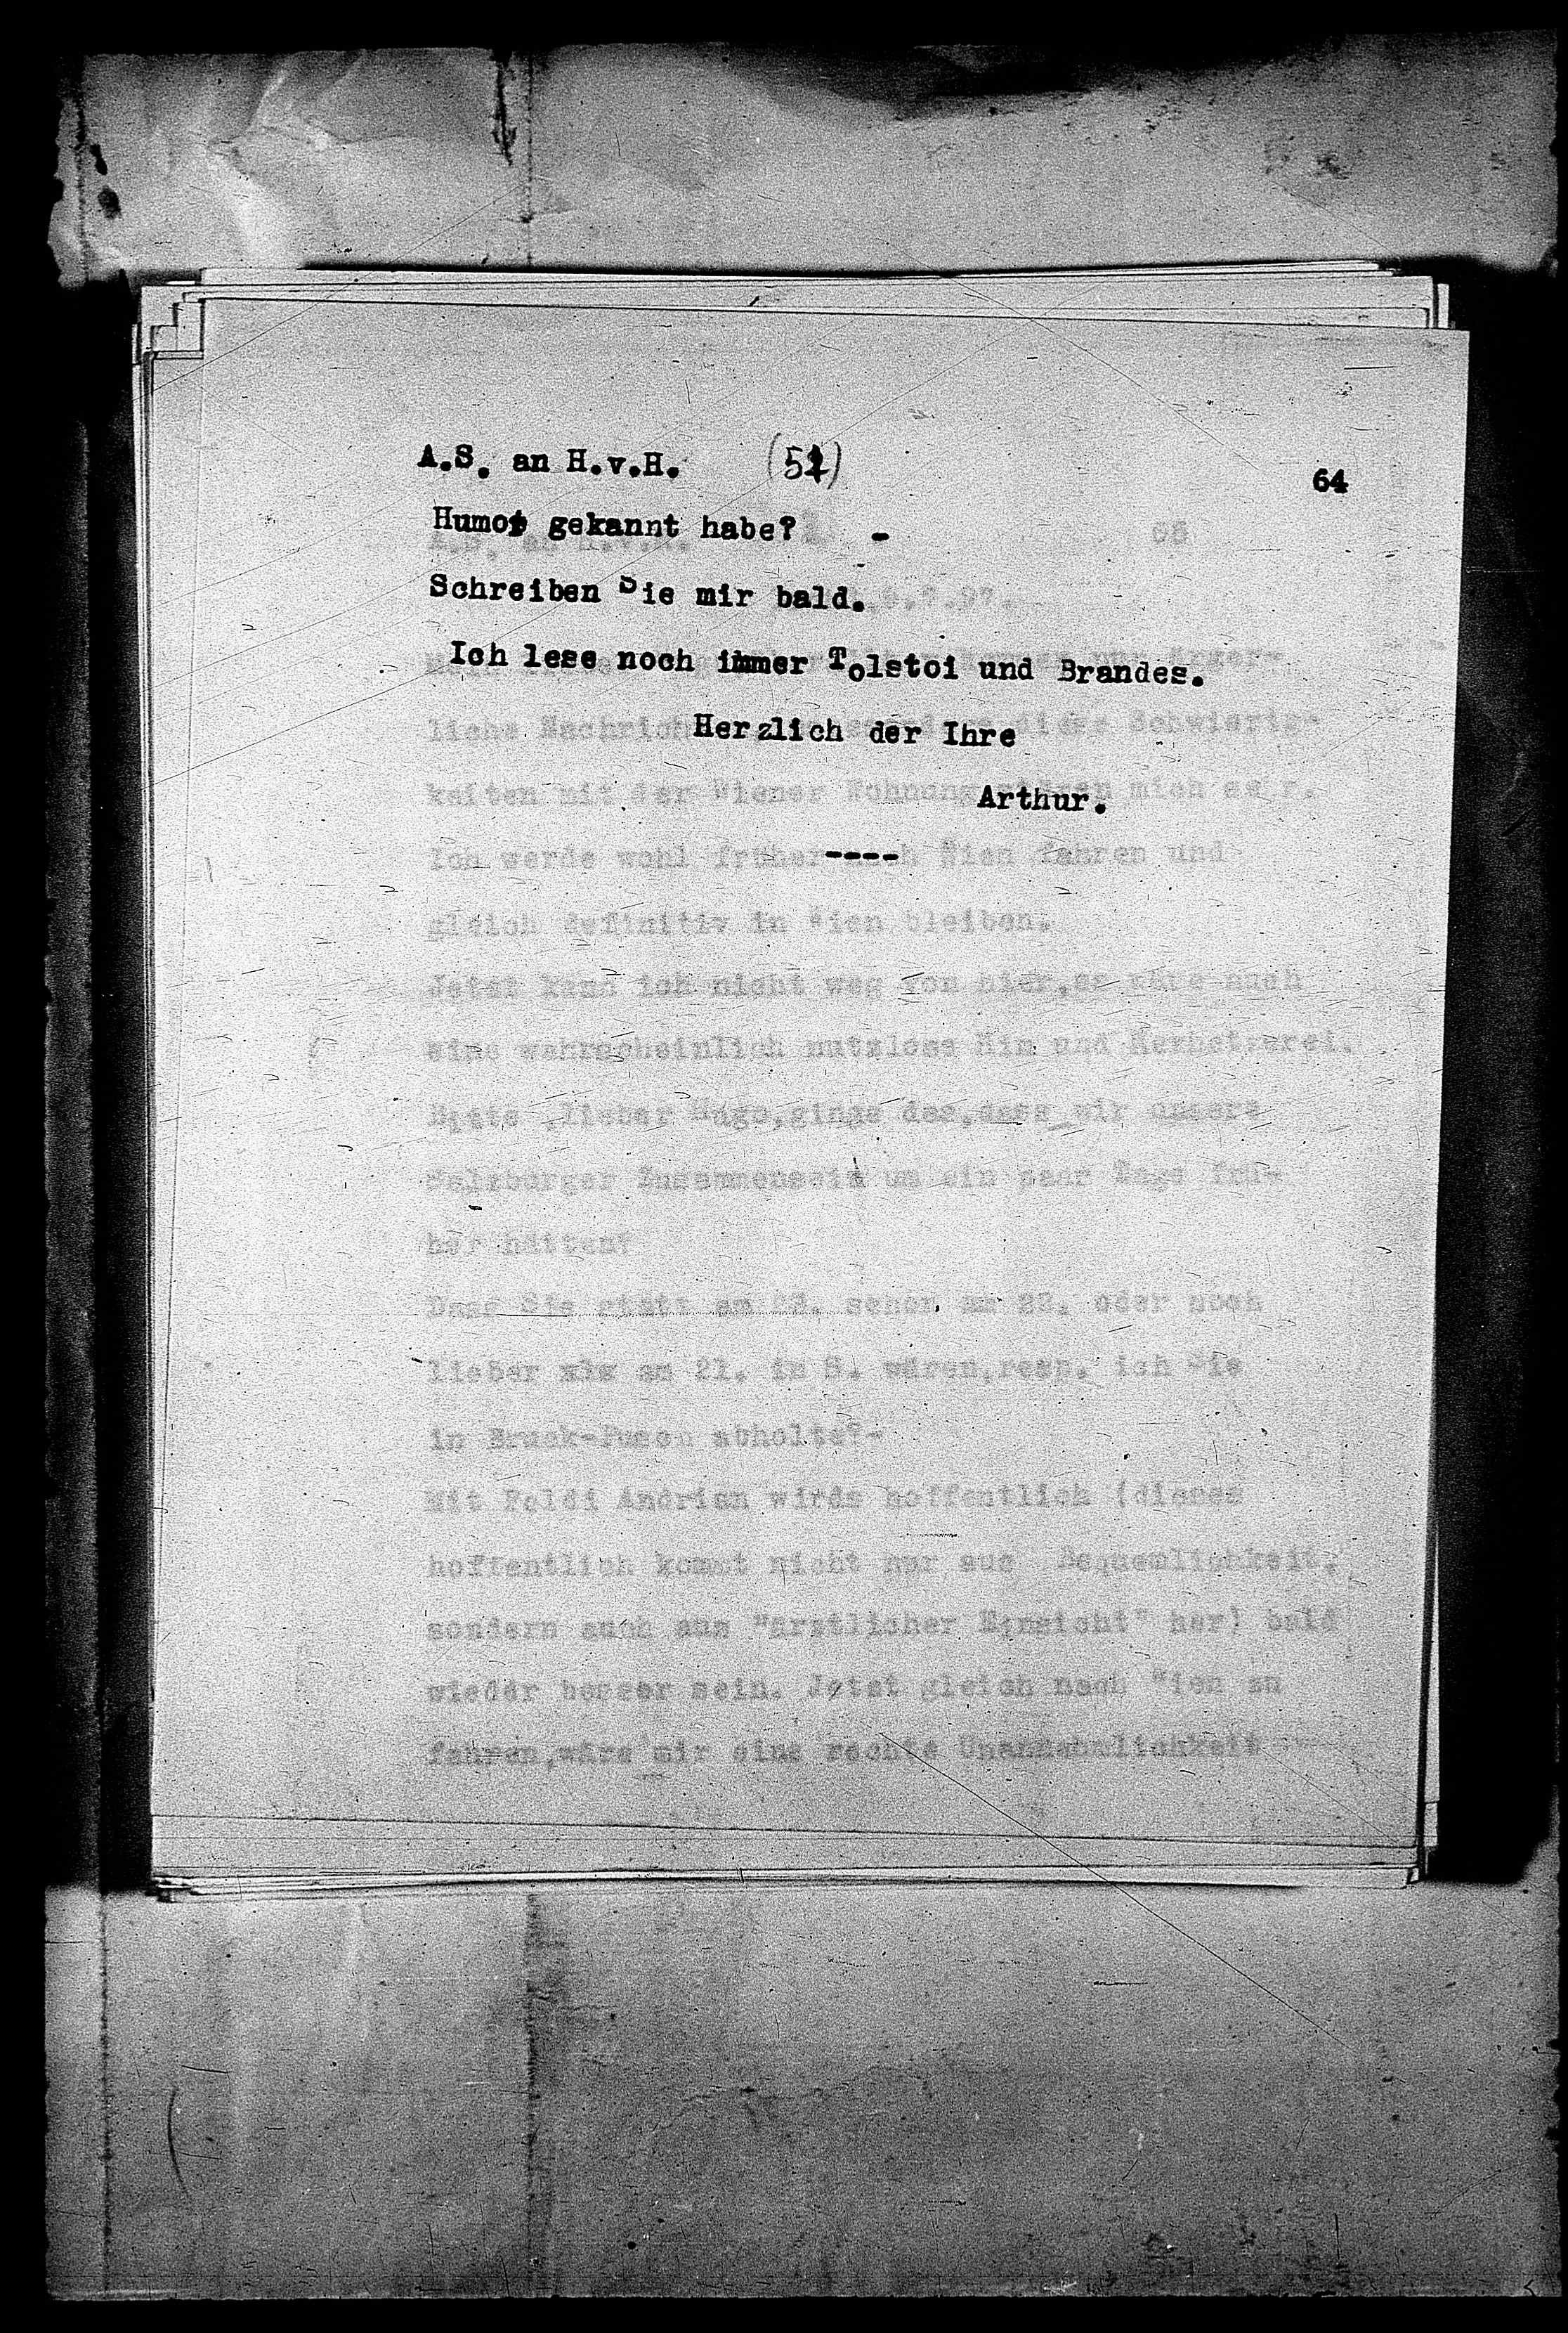 Vorschaubild für Hofmannsthal, Hugo von_AS an HvH Abschrift, HvH an AS, Originale (Mikrofilm 38), Seite 67